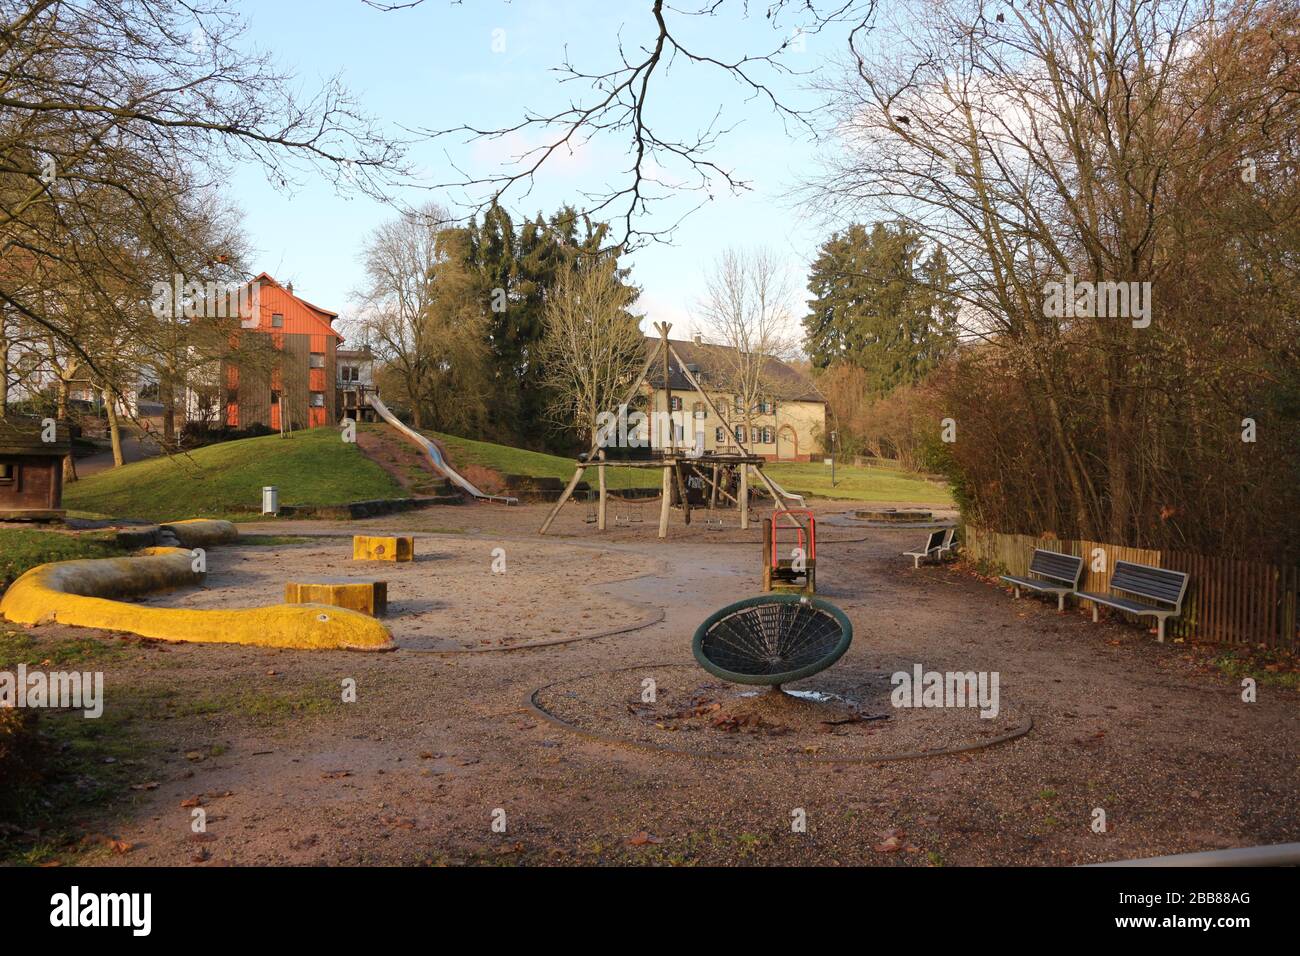 Idyllischer Park im Zentrum von Illingen im Saarland Stock Photo